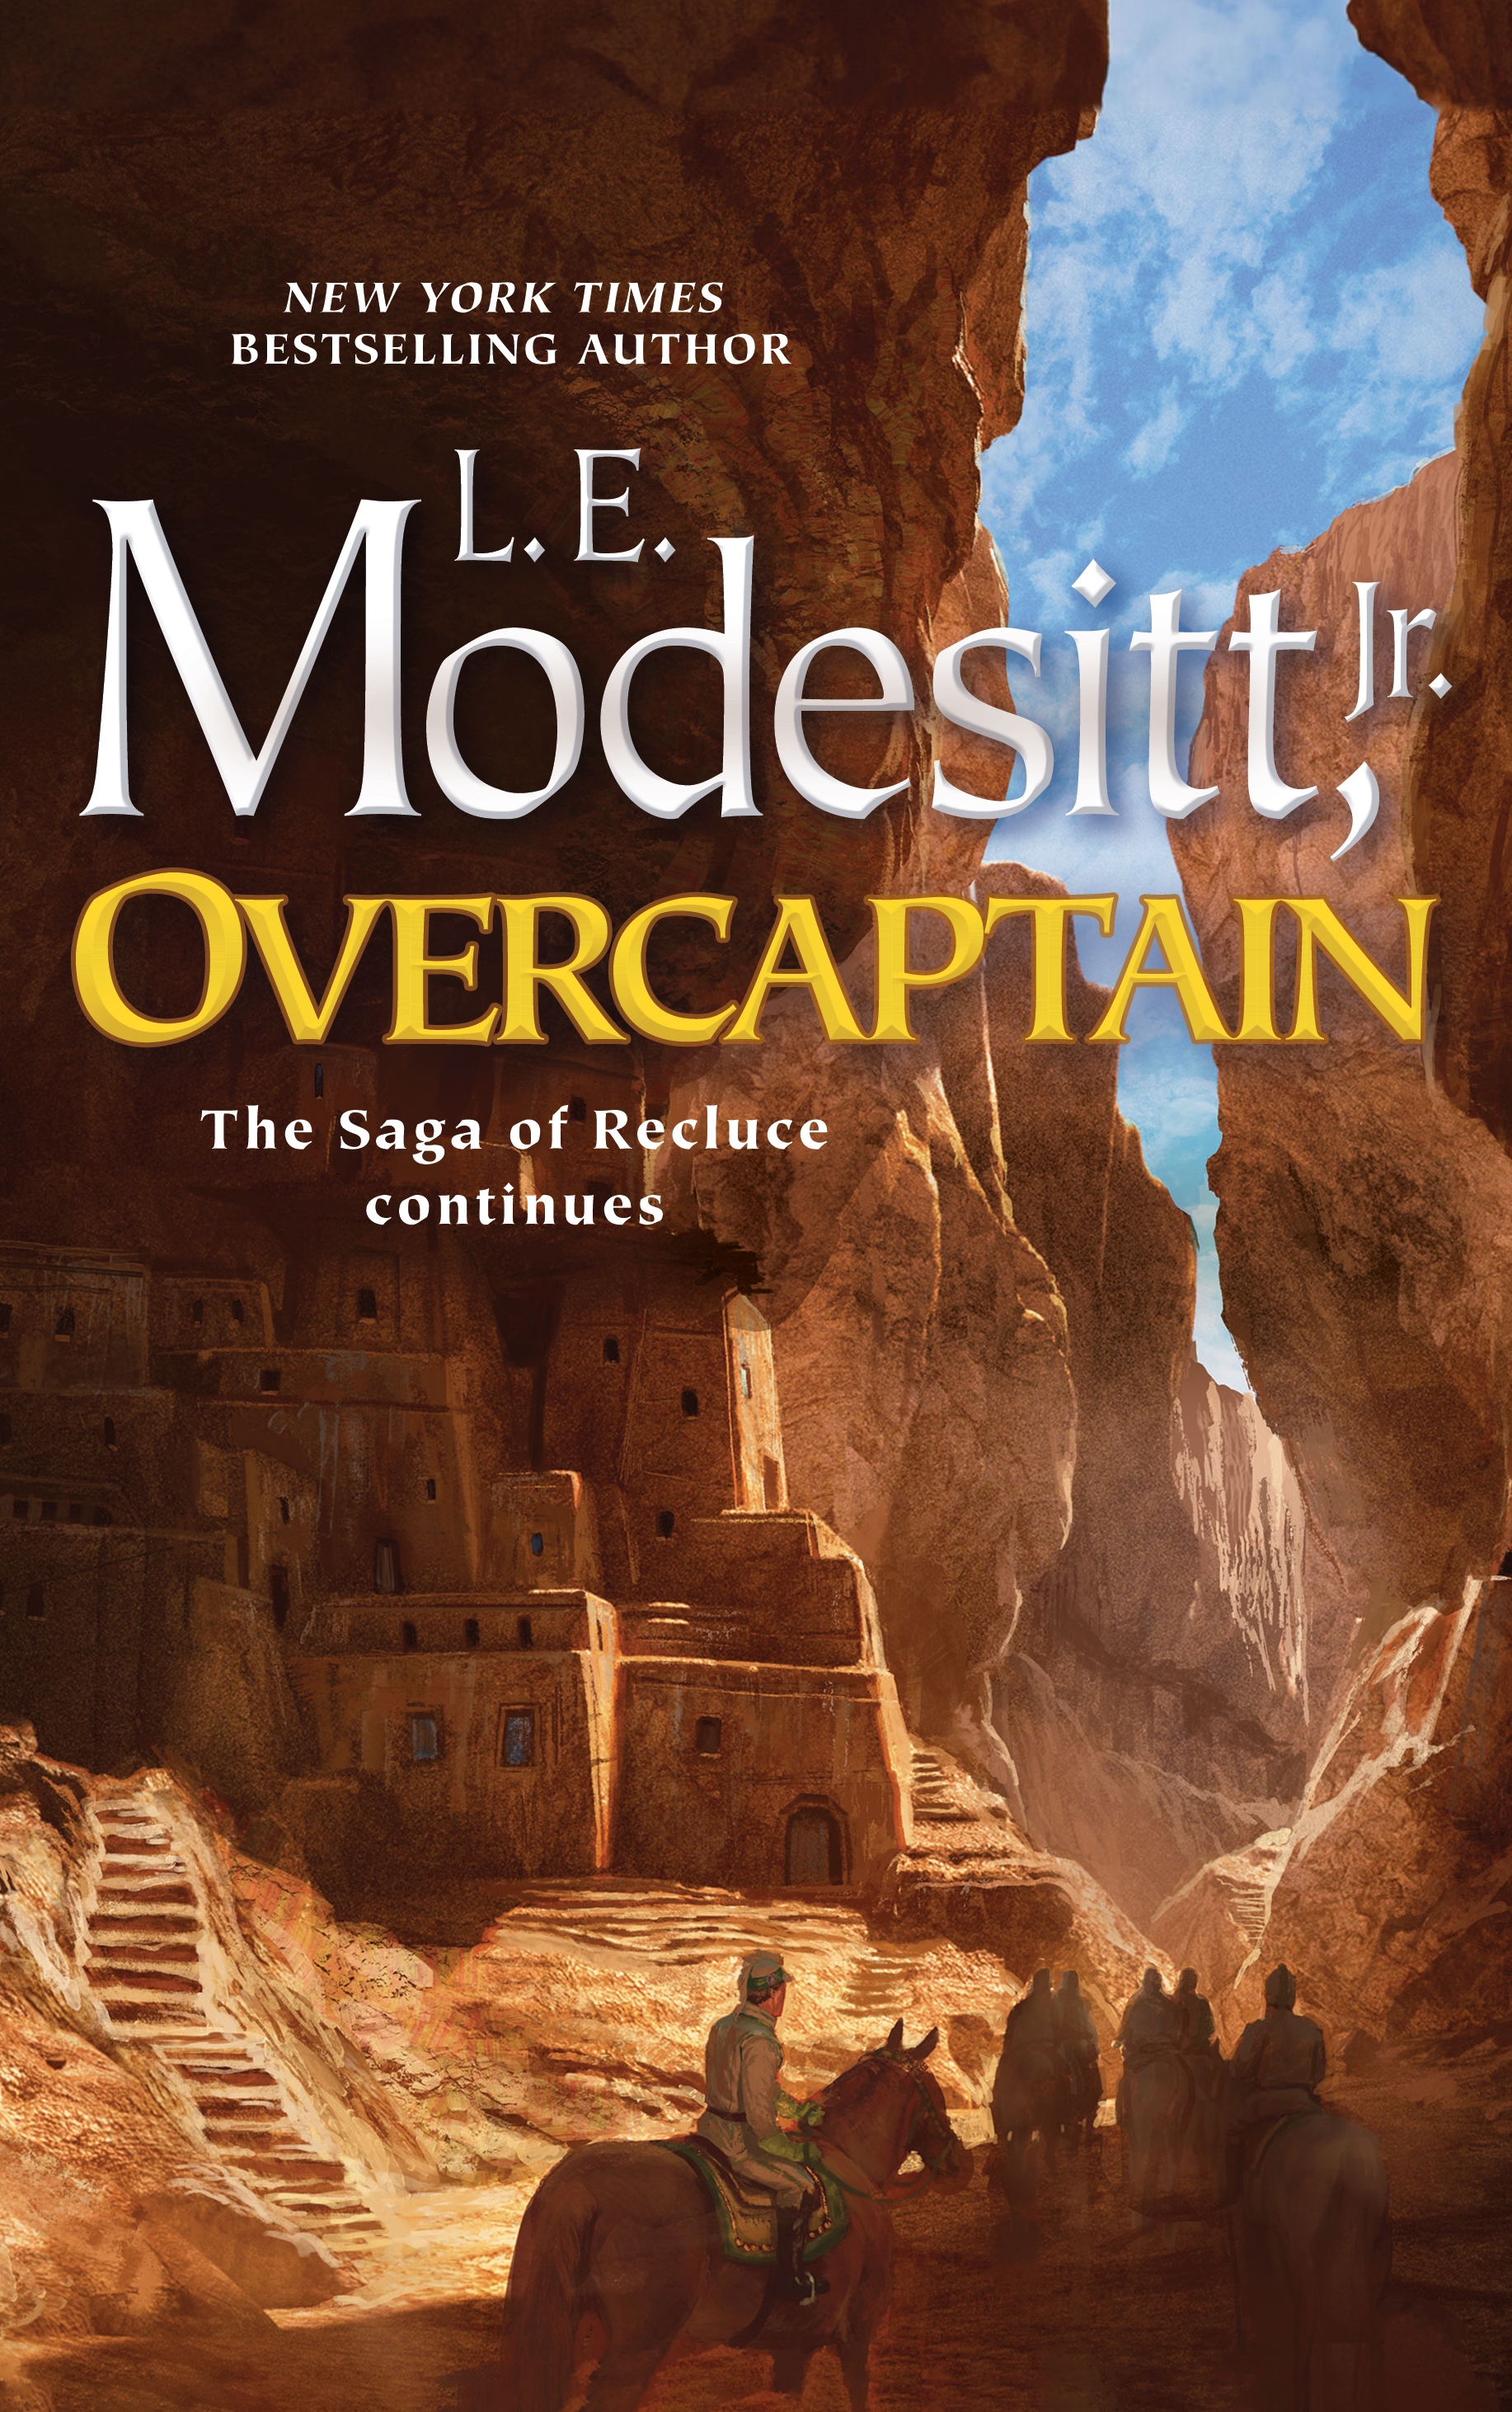 Overcaptain by L. E. Modesitt, Jr.